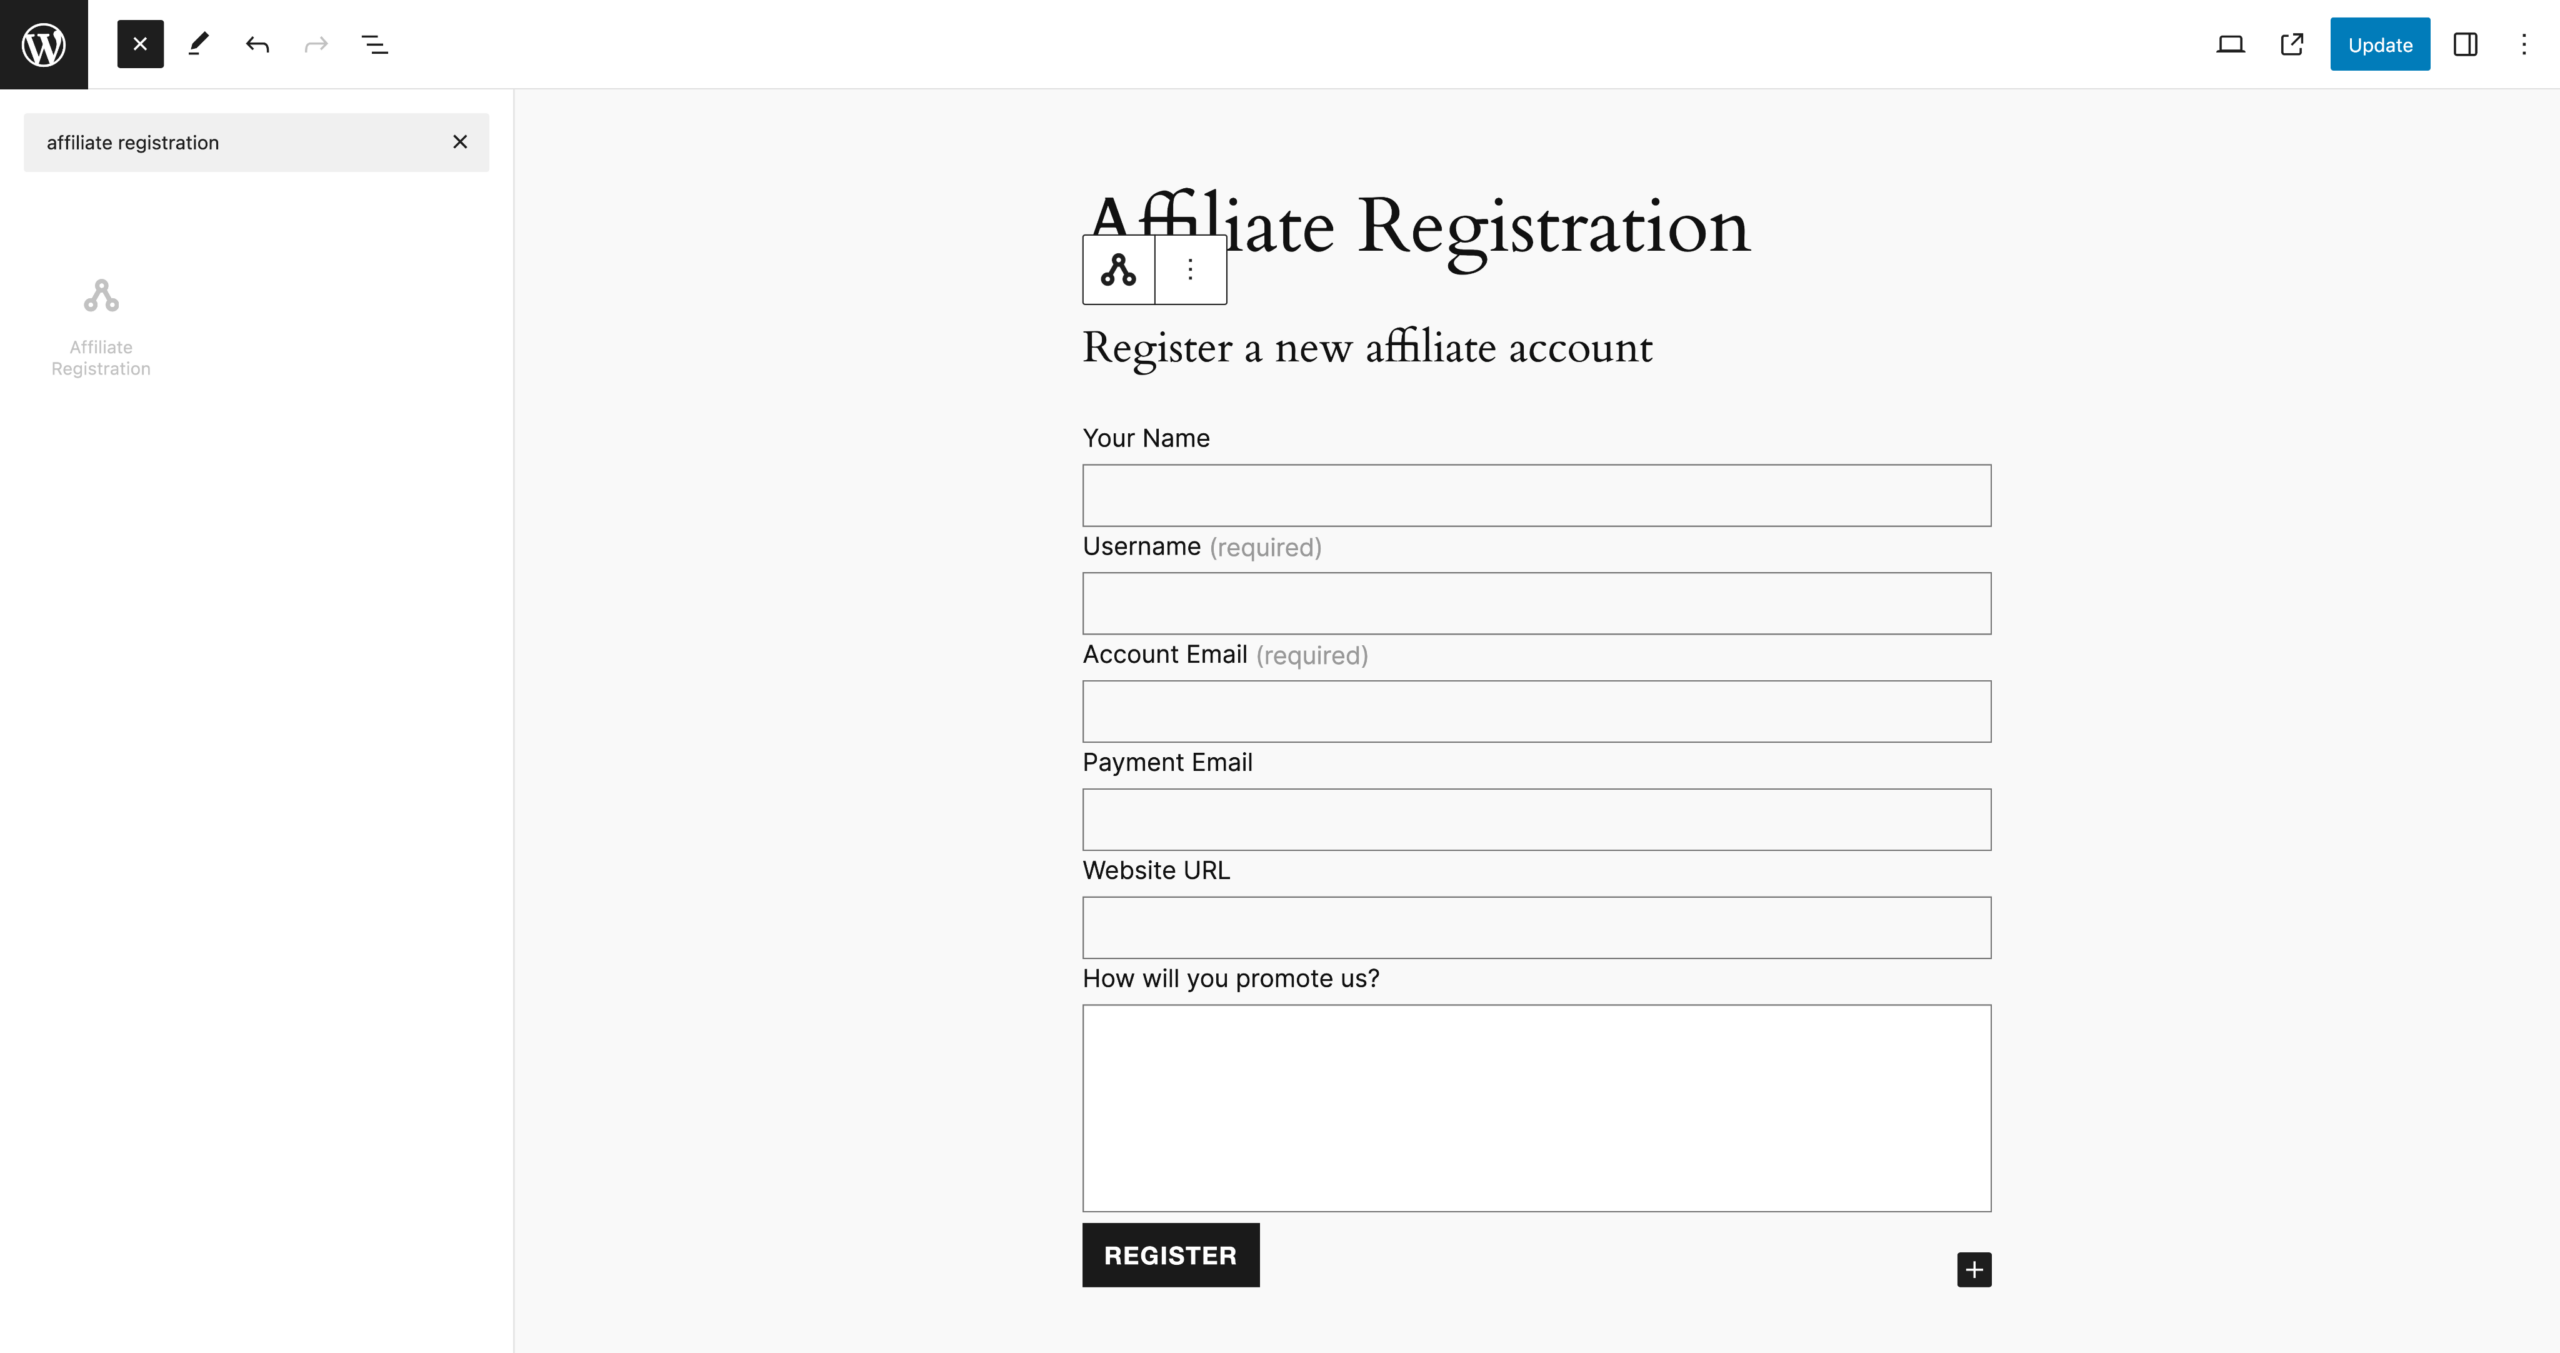 Affiliate Registration Form